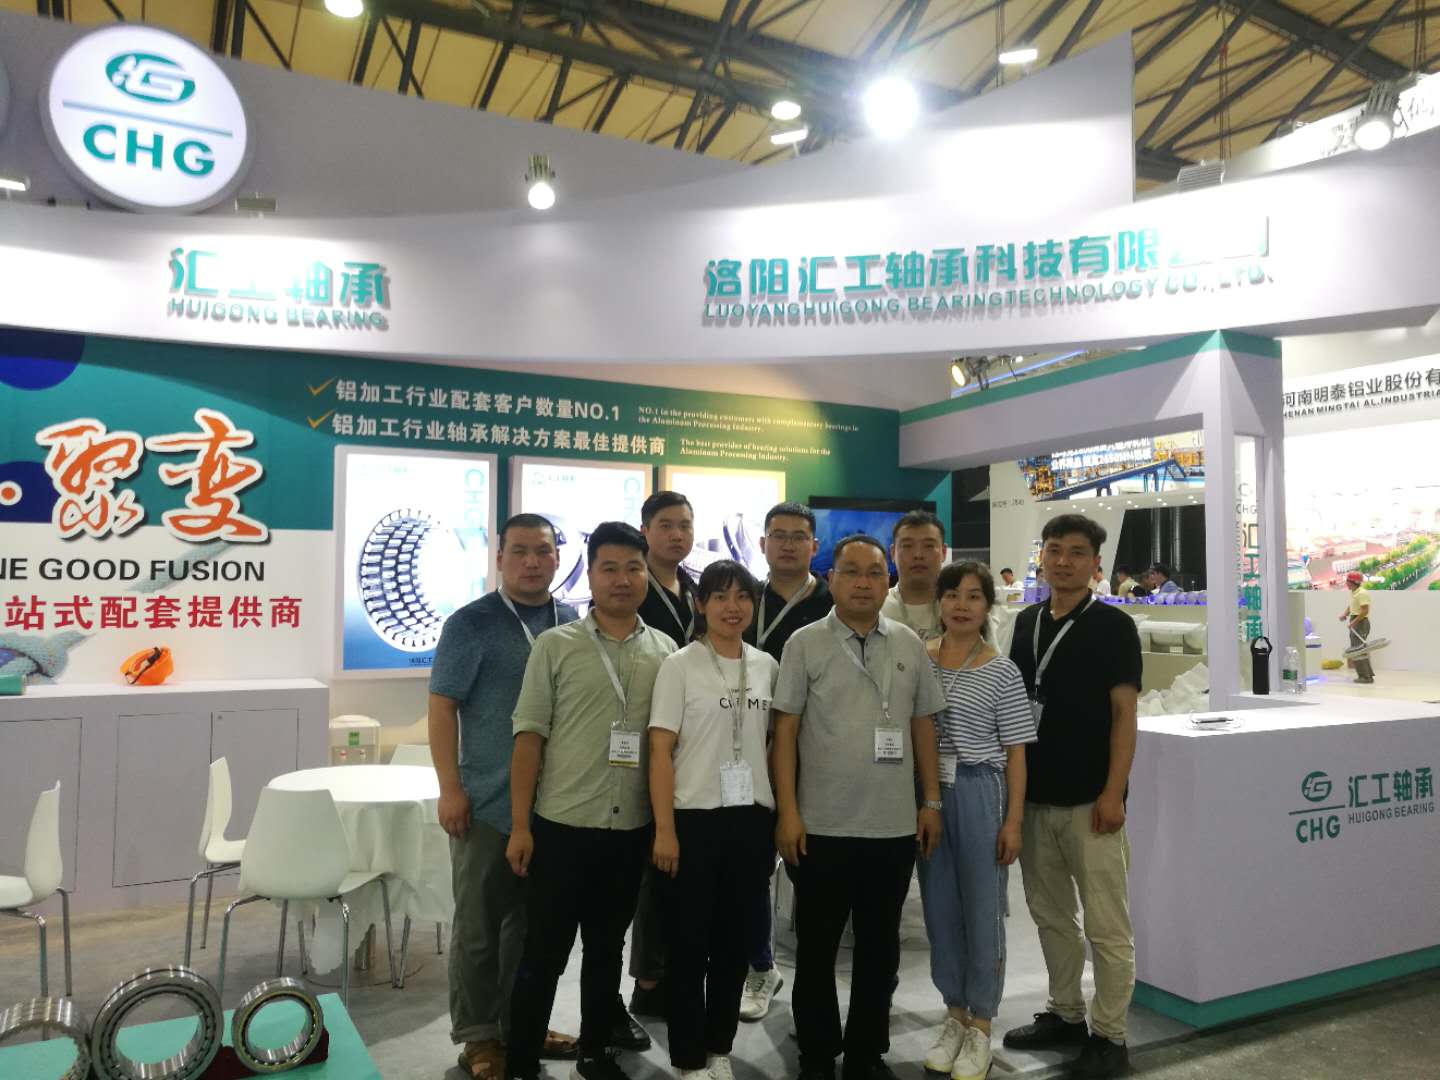 Luoyang Huigong Bearing manufacturer